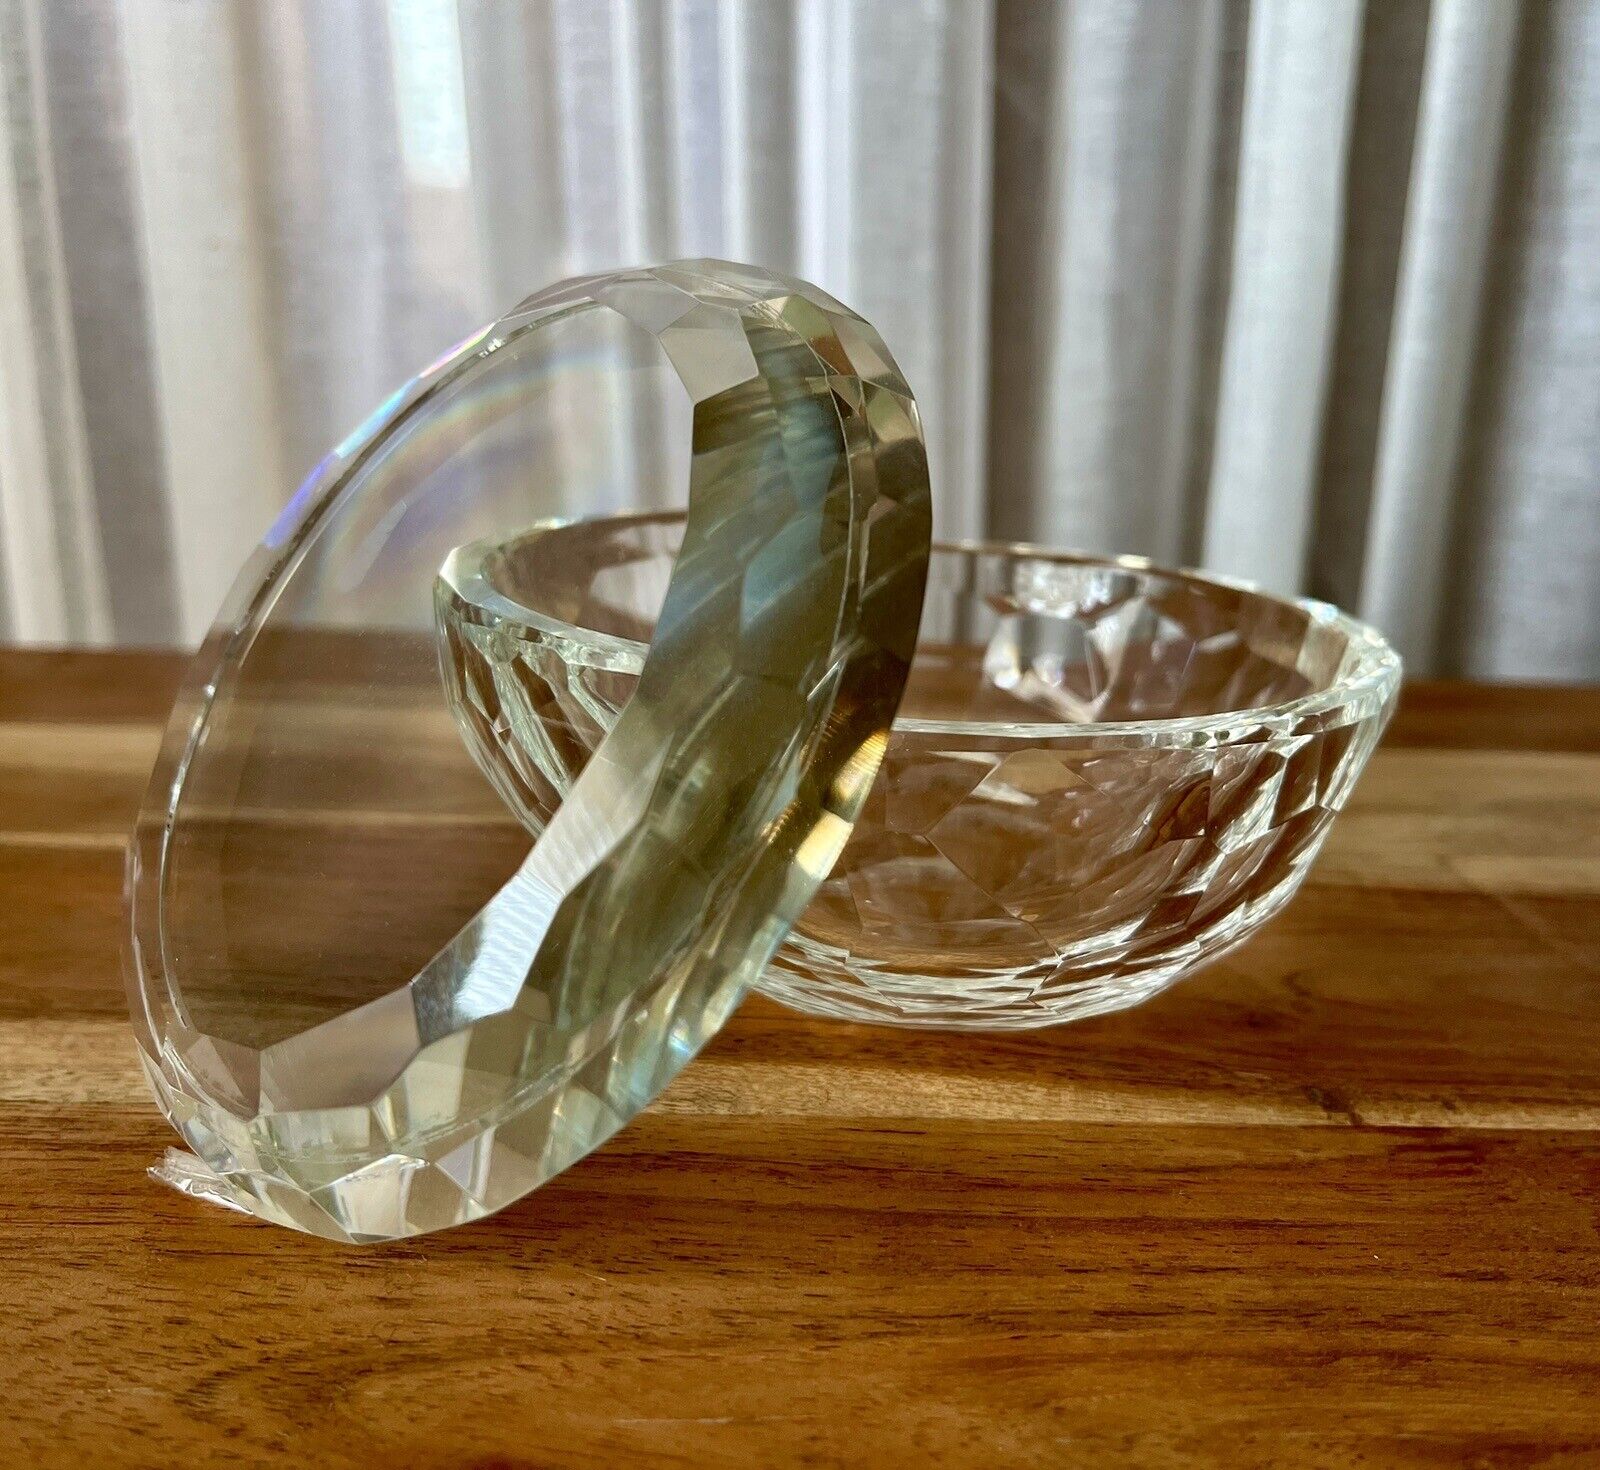 Vintage Faceted Crystal Bowl With Lid - Signed by Designer Oleg Cassini